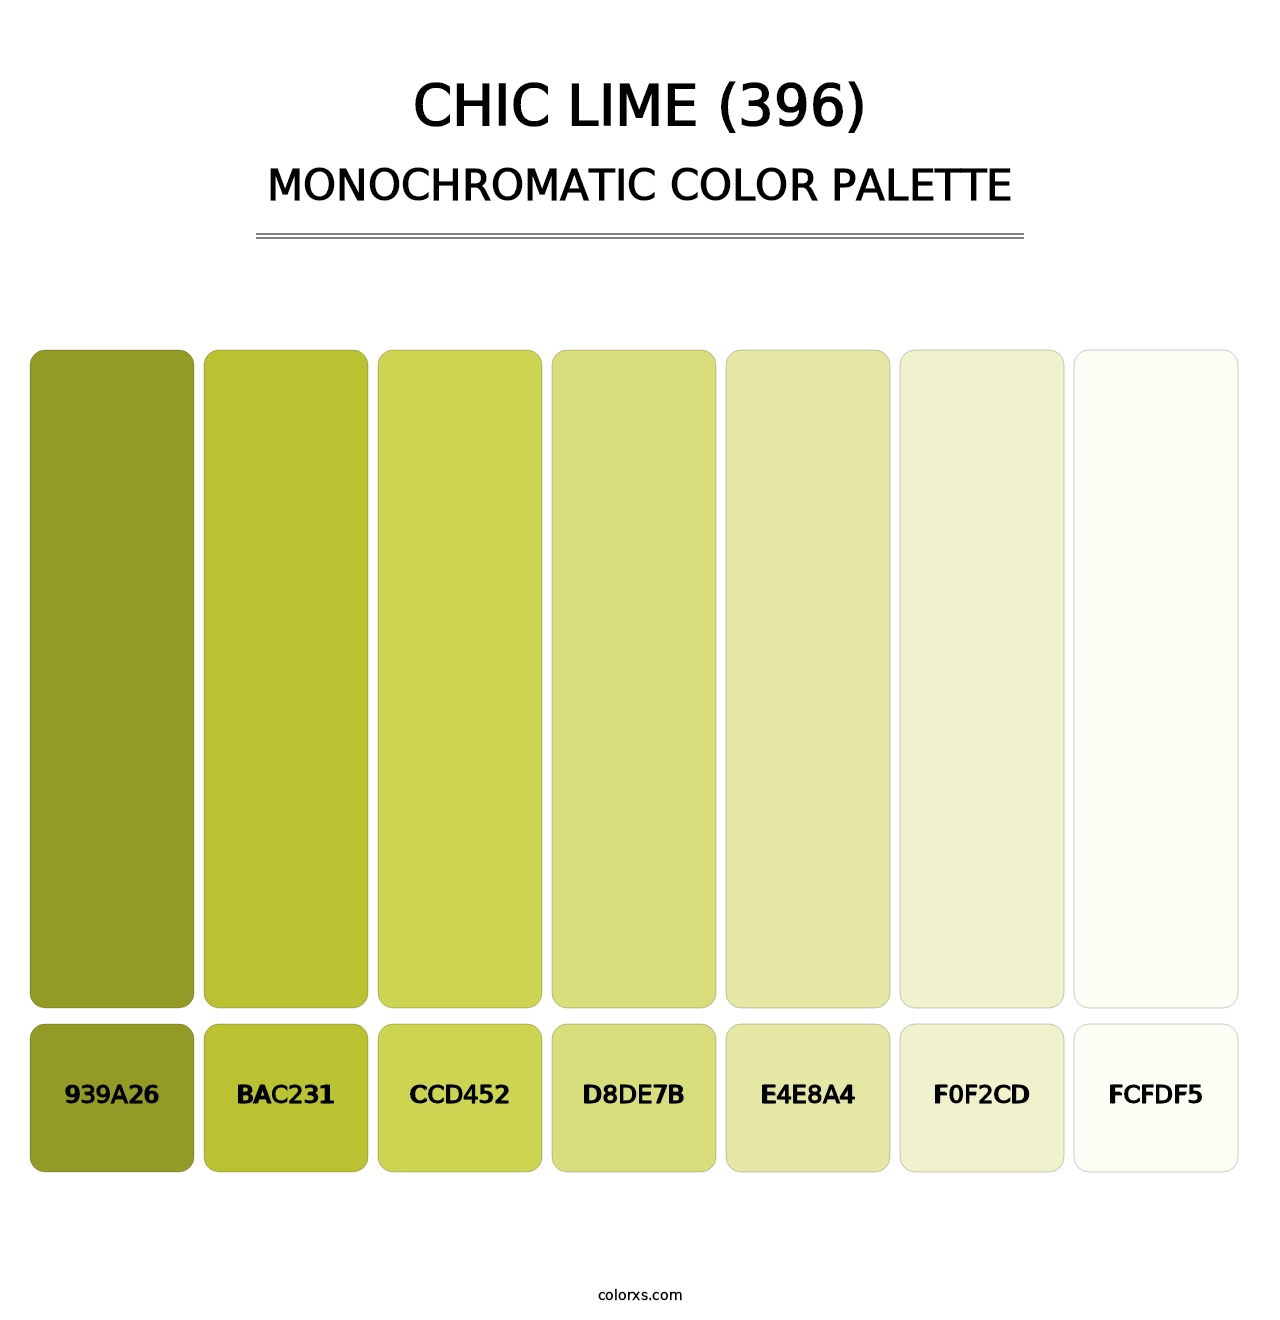 Chic Lime (396) - Monochromatic Color Palette